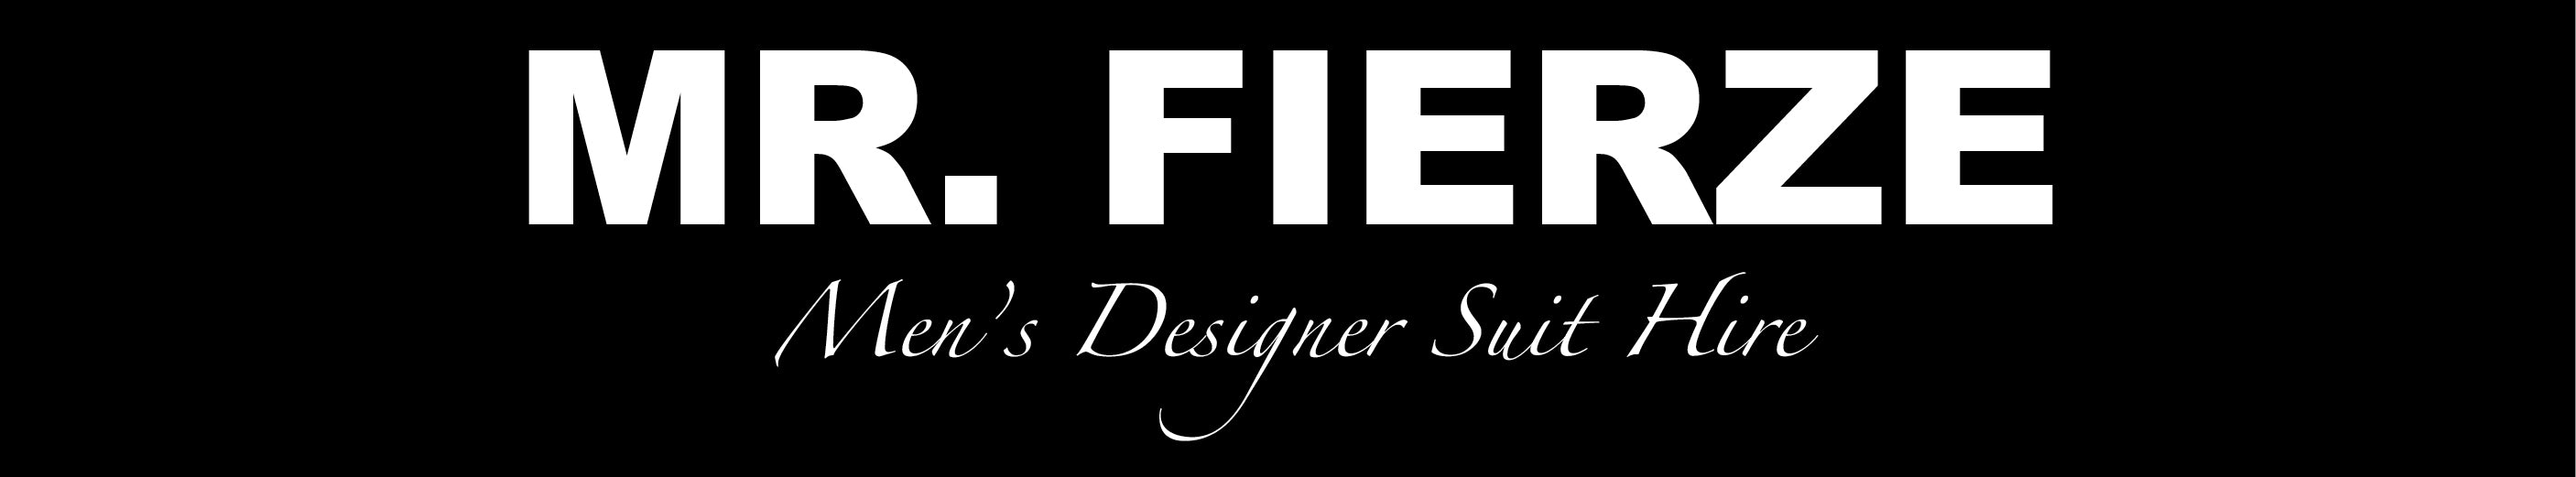 Mr. Fierze - Men's Designer Suit Hire based in North Sydney